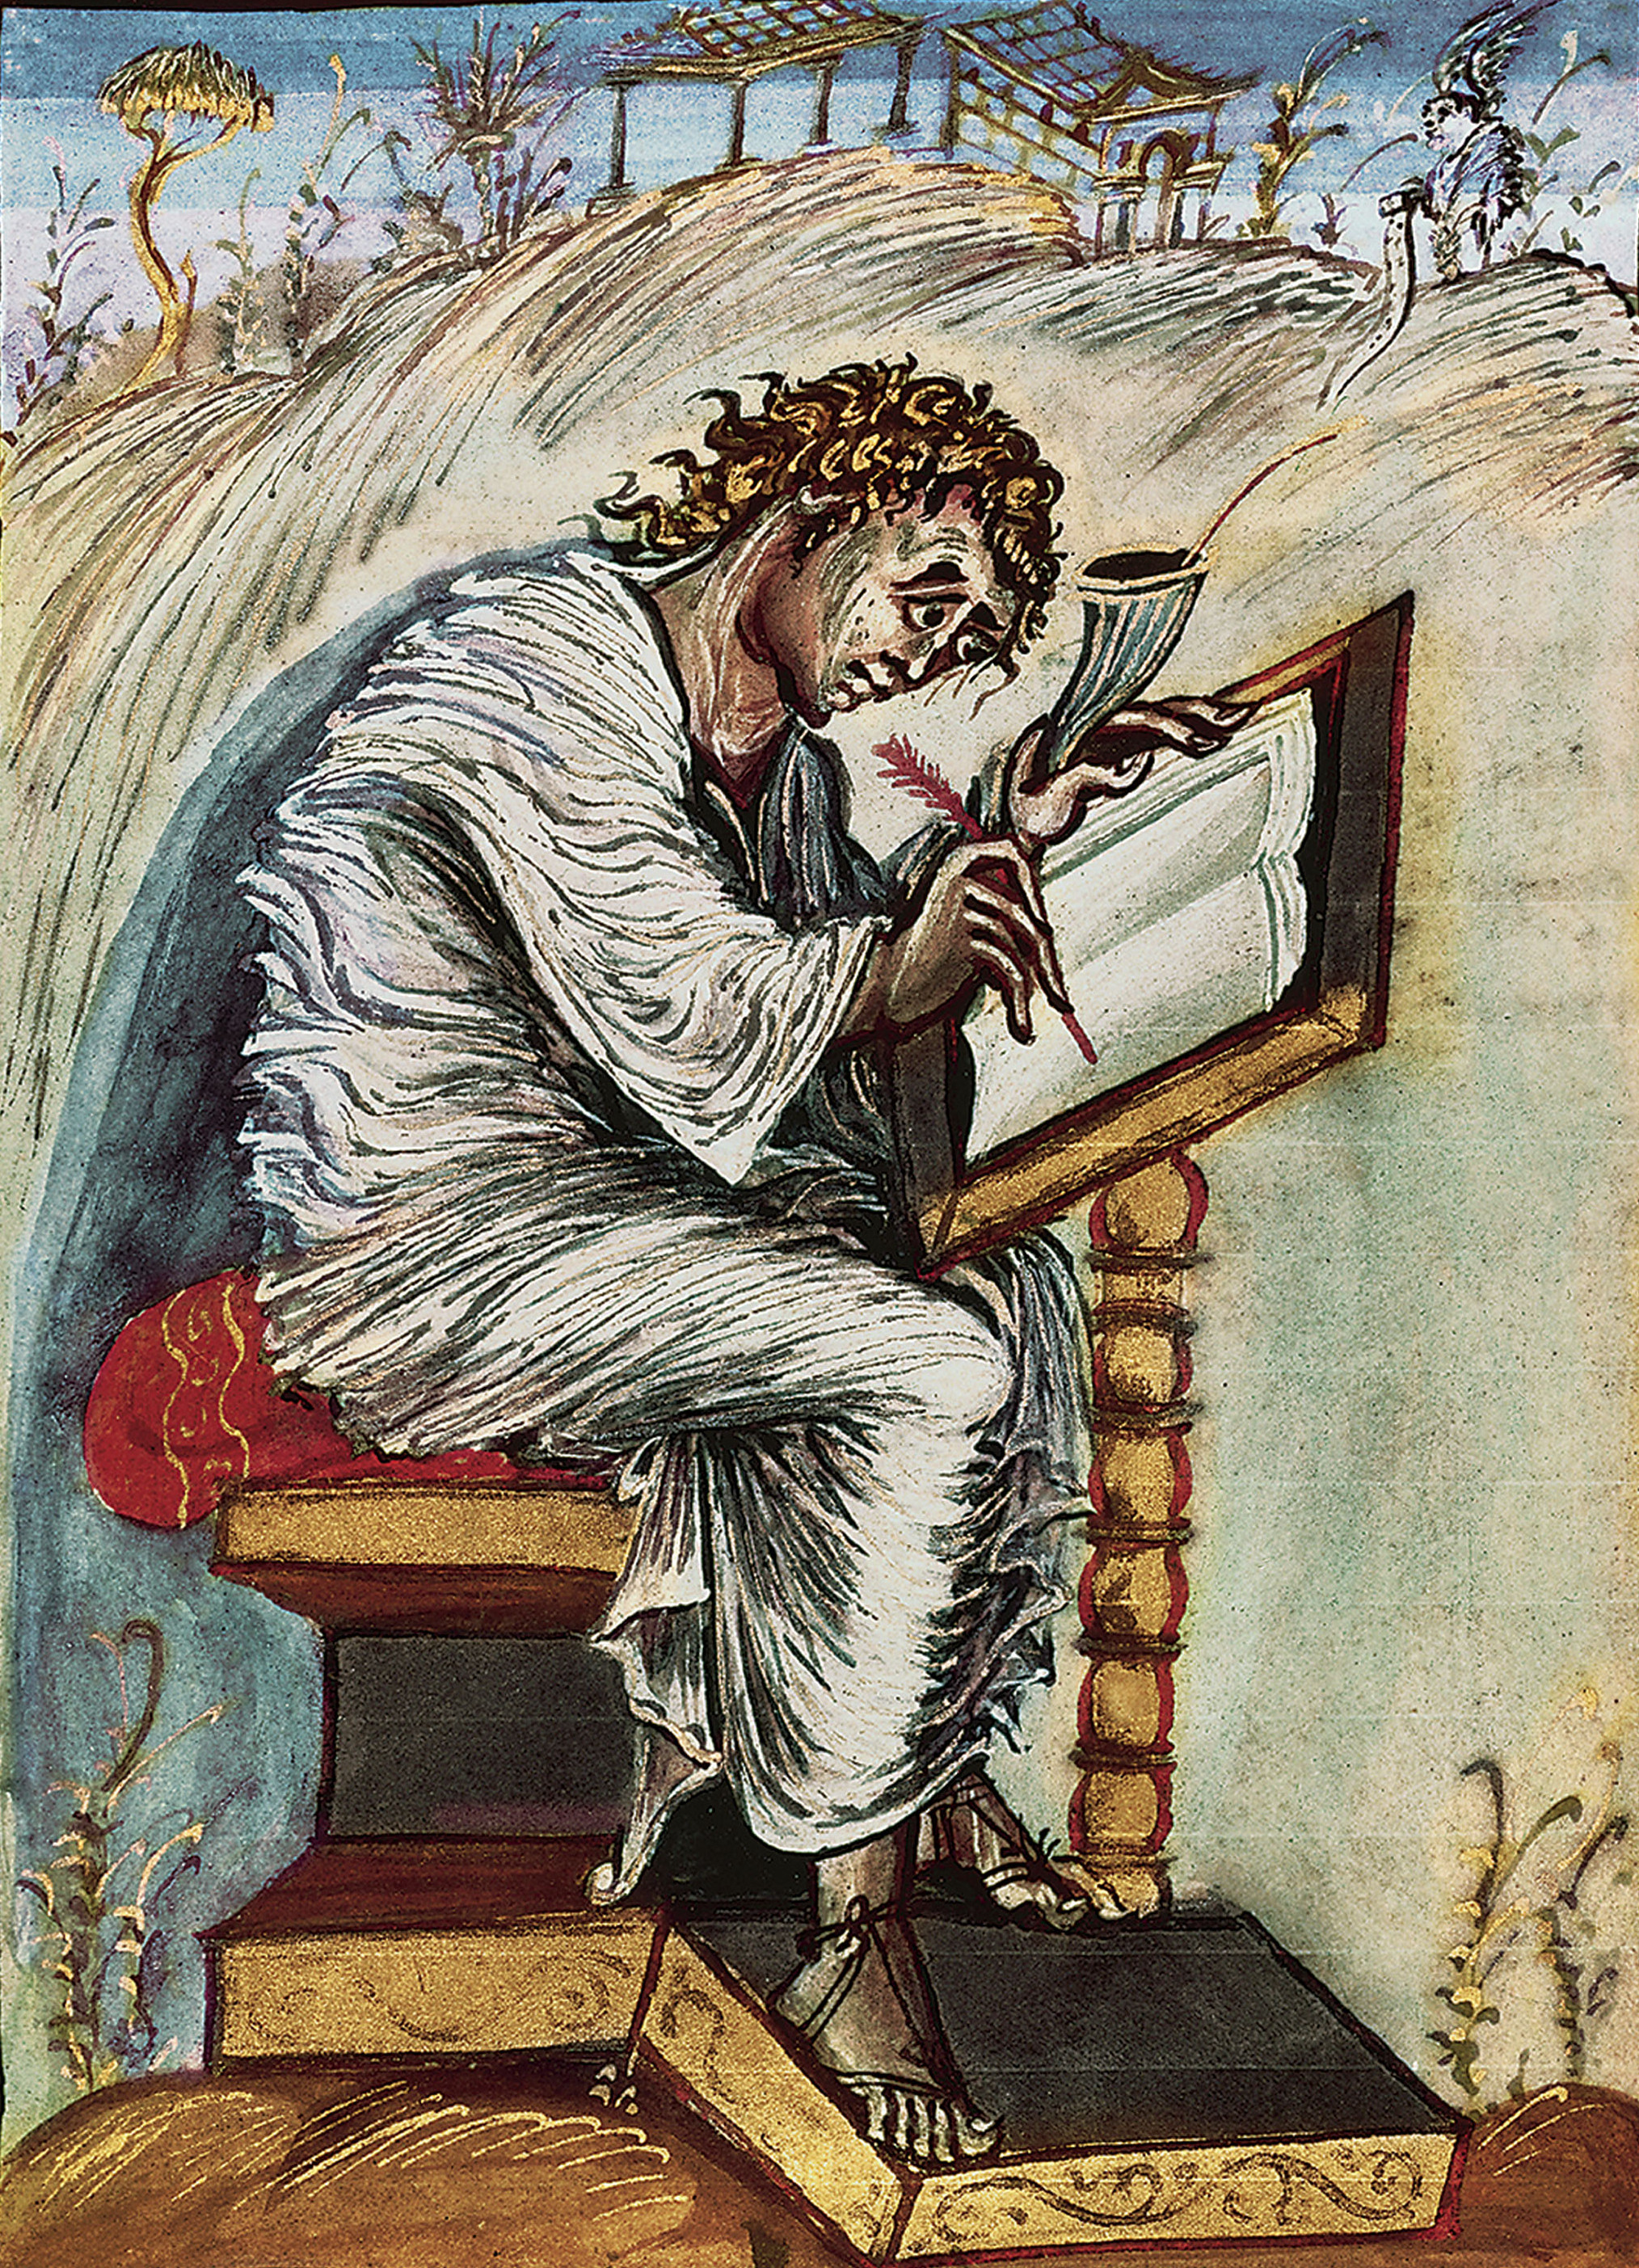 Sfîntul Matei, ilustraţie dintr-o evanghelie din sec. al XIX-lea, Épernay (Biblioteca Municipală), Franţa